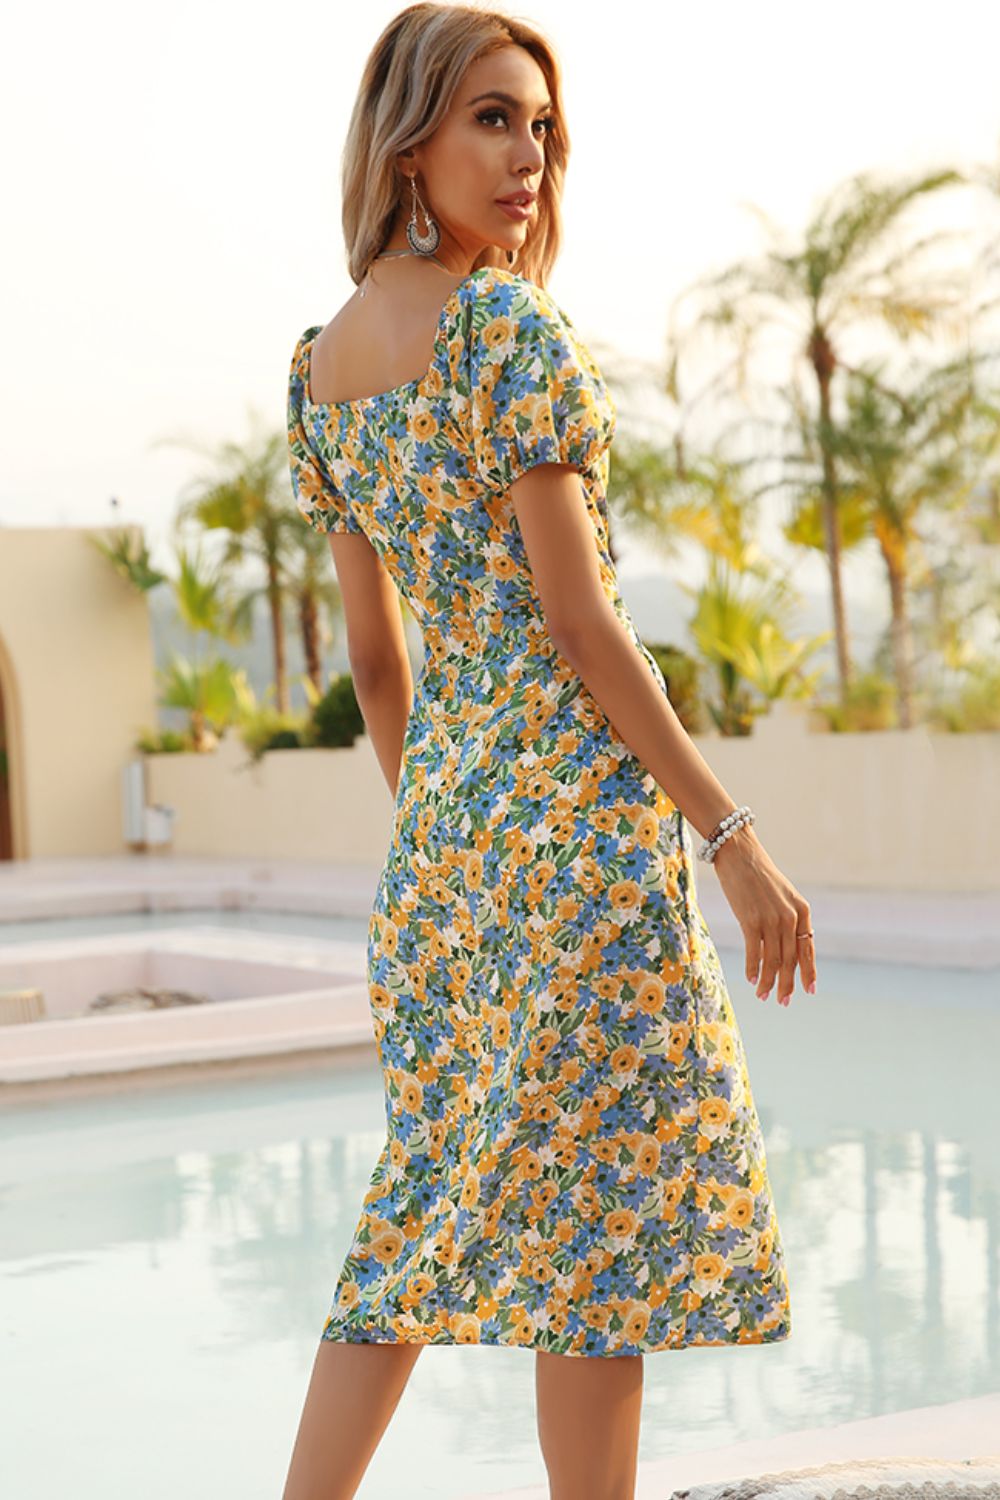 Summer Floral Dress: Short Sleeve Split Hem Style for Beach Weddings & Parties - Women's Event Attire